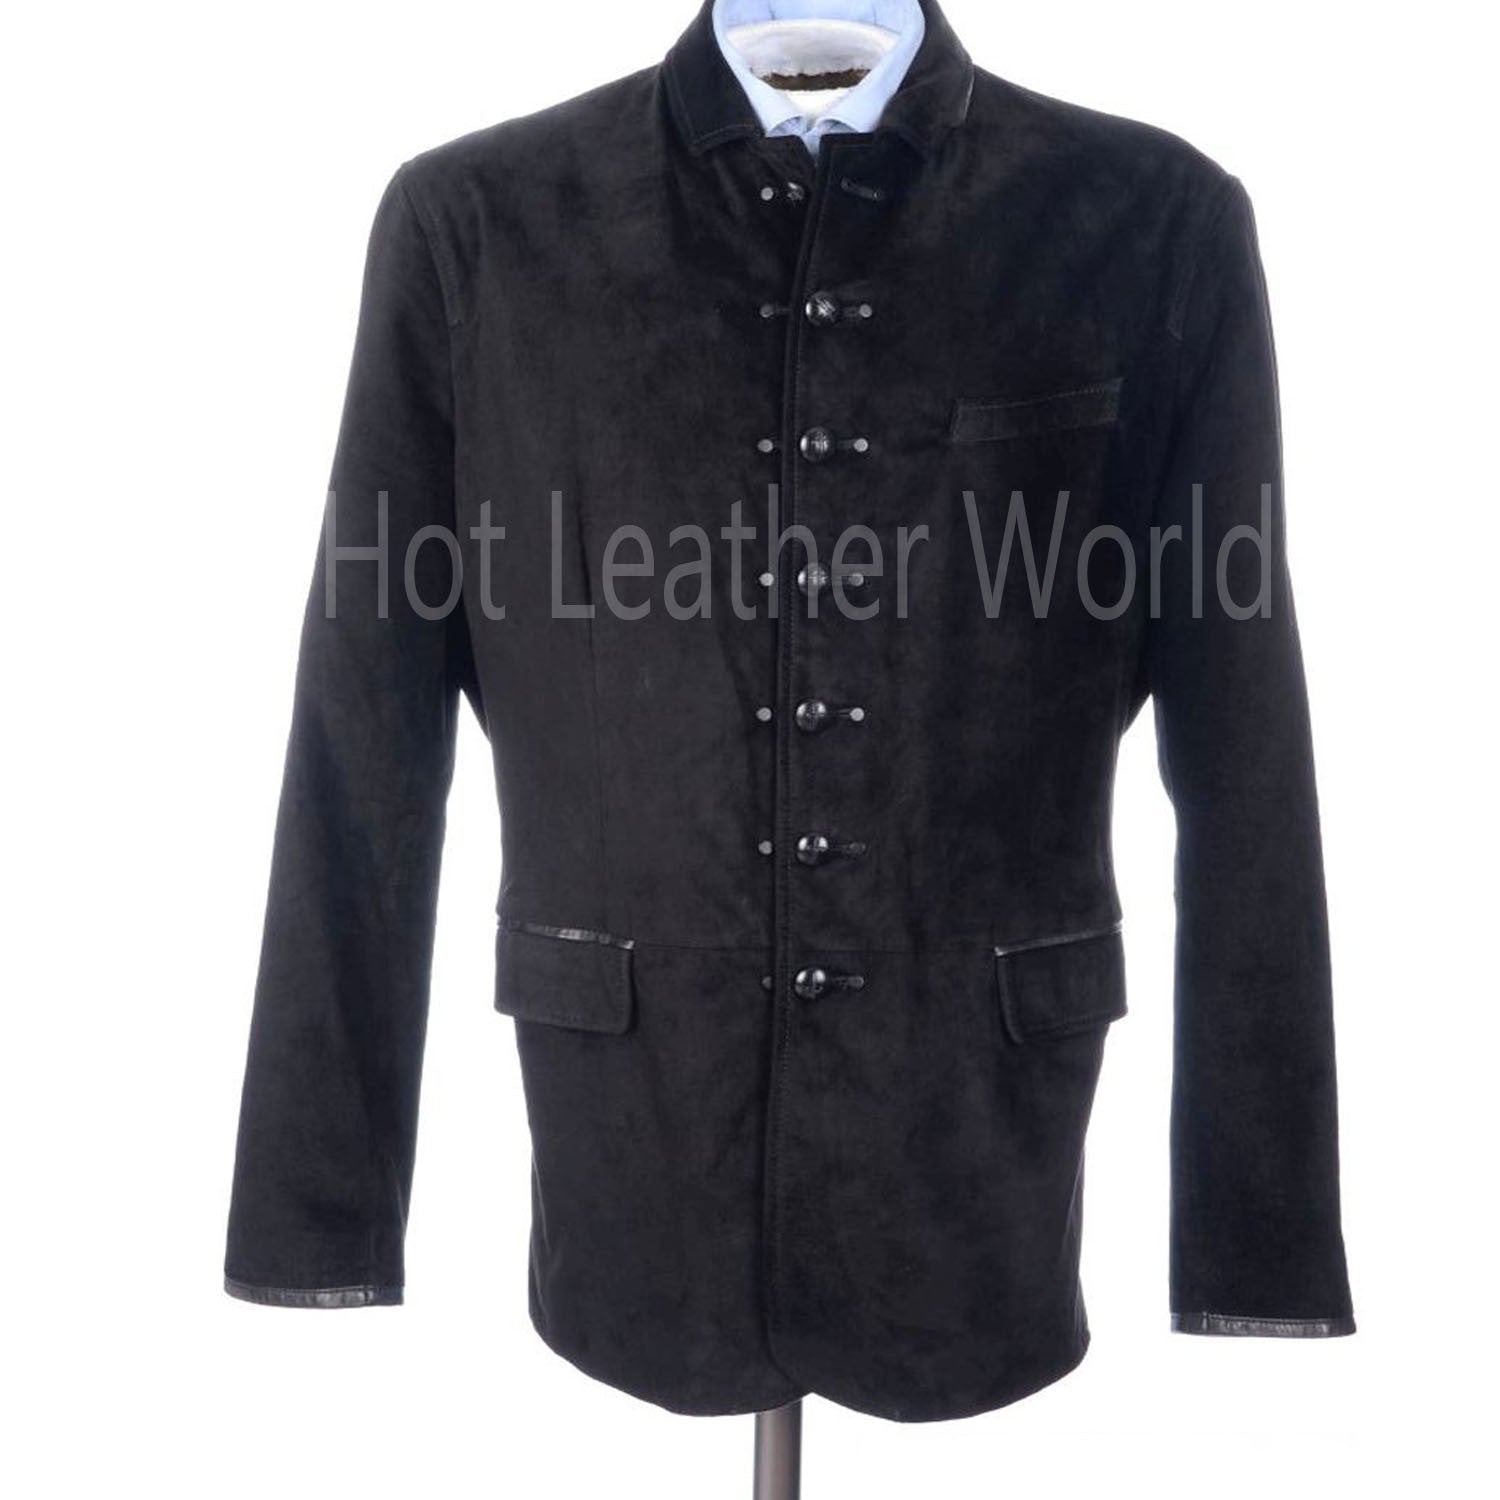 Suede Leather Military Men Jacket -  HOTLEATHERWORLD